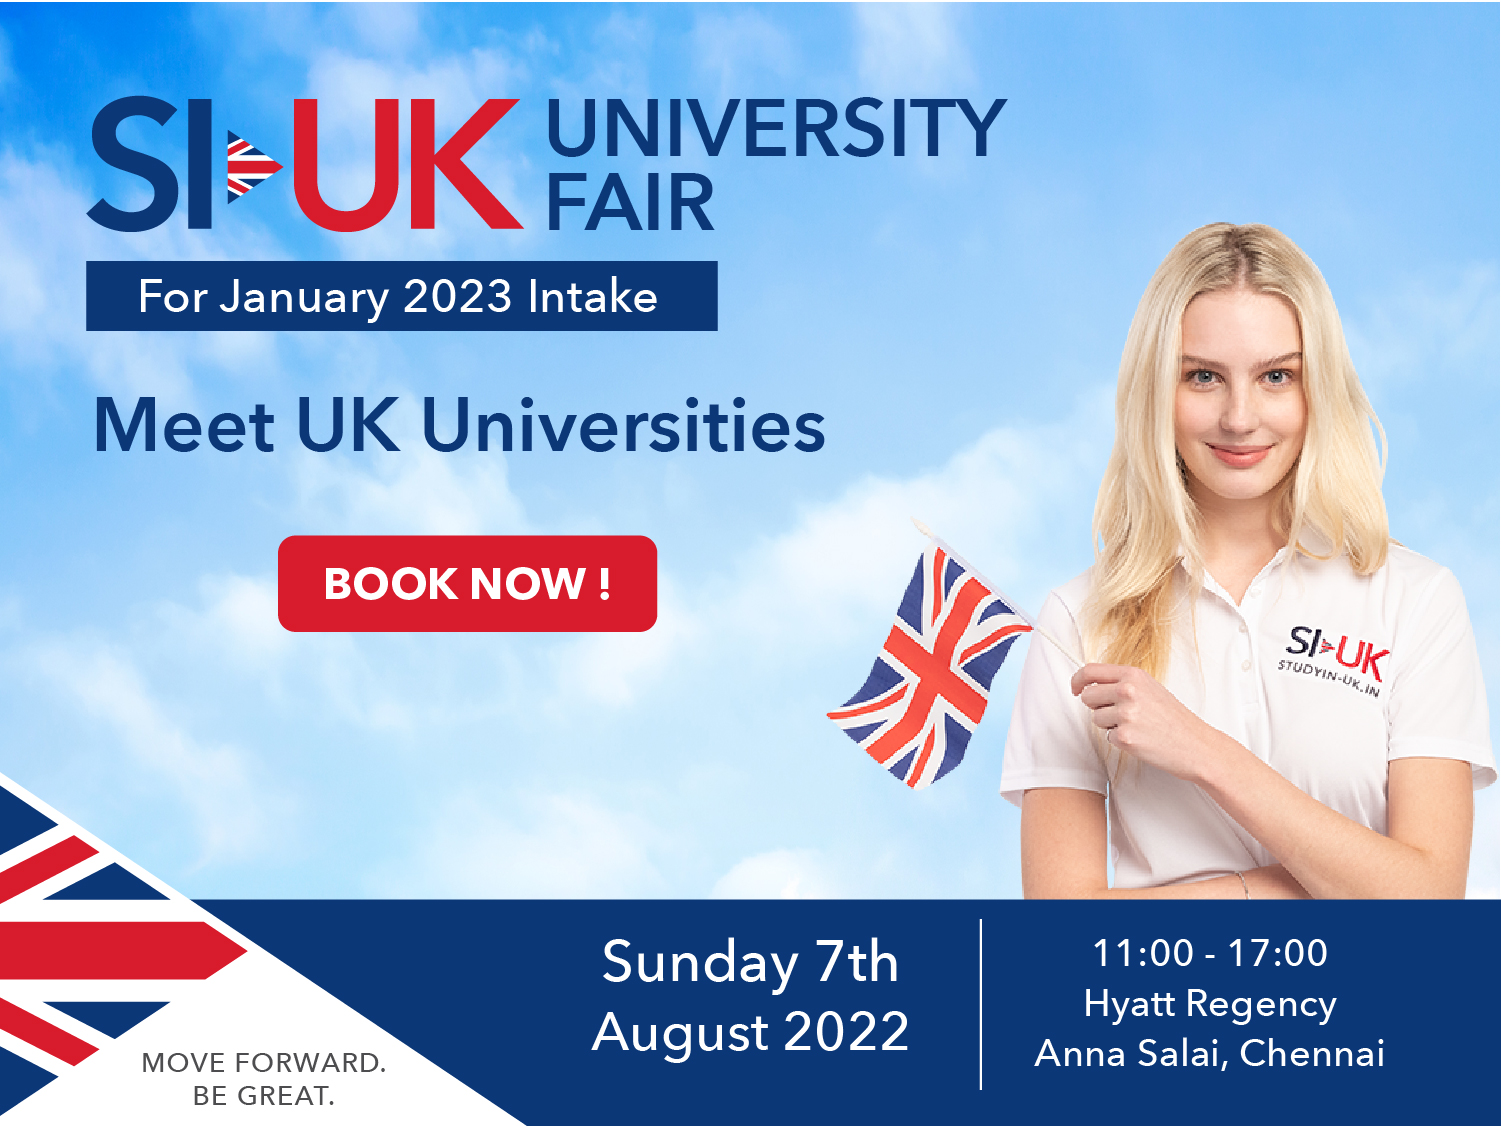 SI-UK University Fair Chennai 2022, Chennai, Tamil Nadu, India